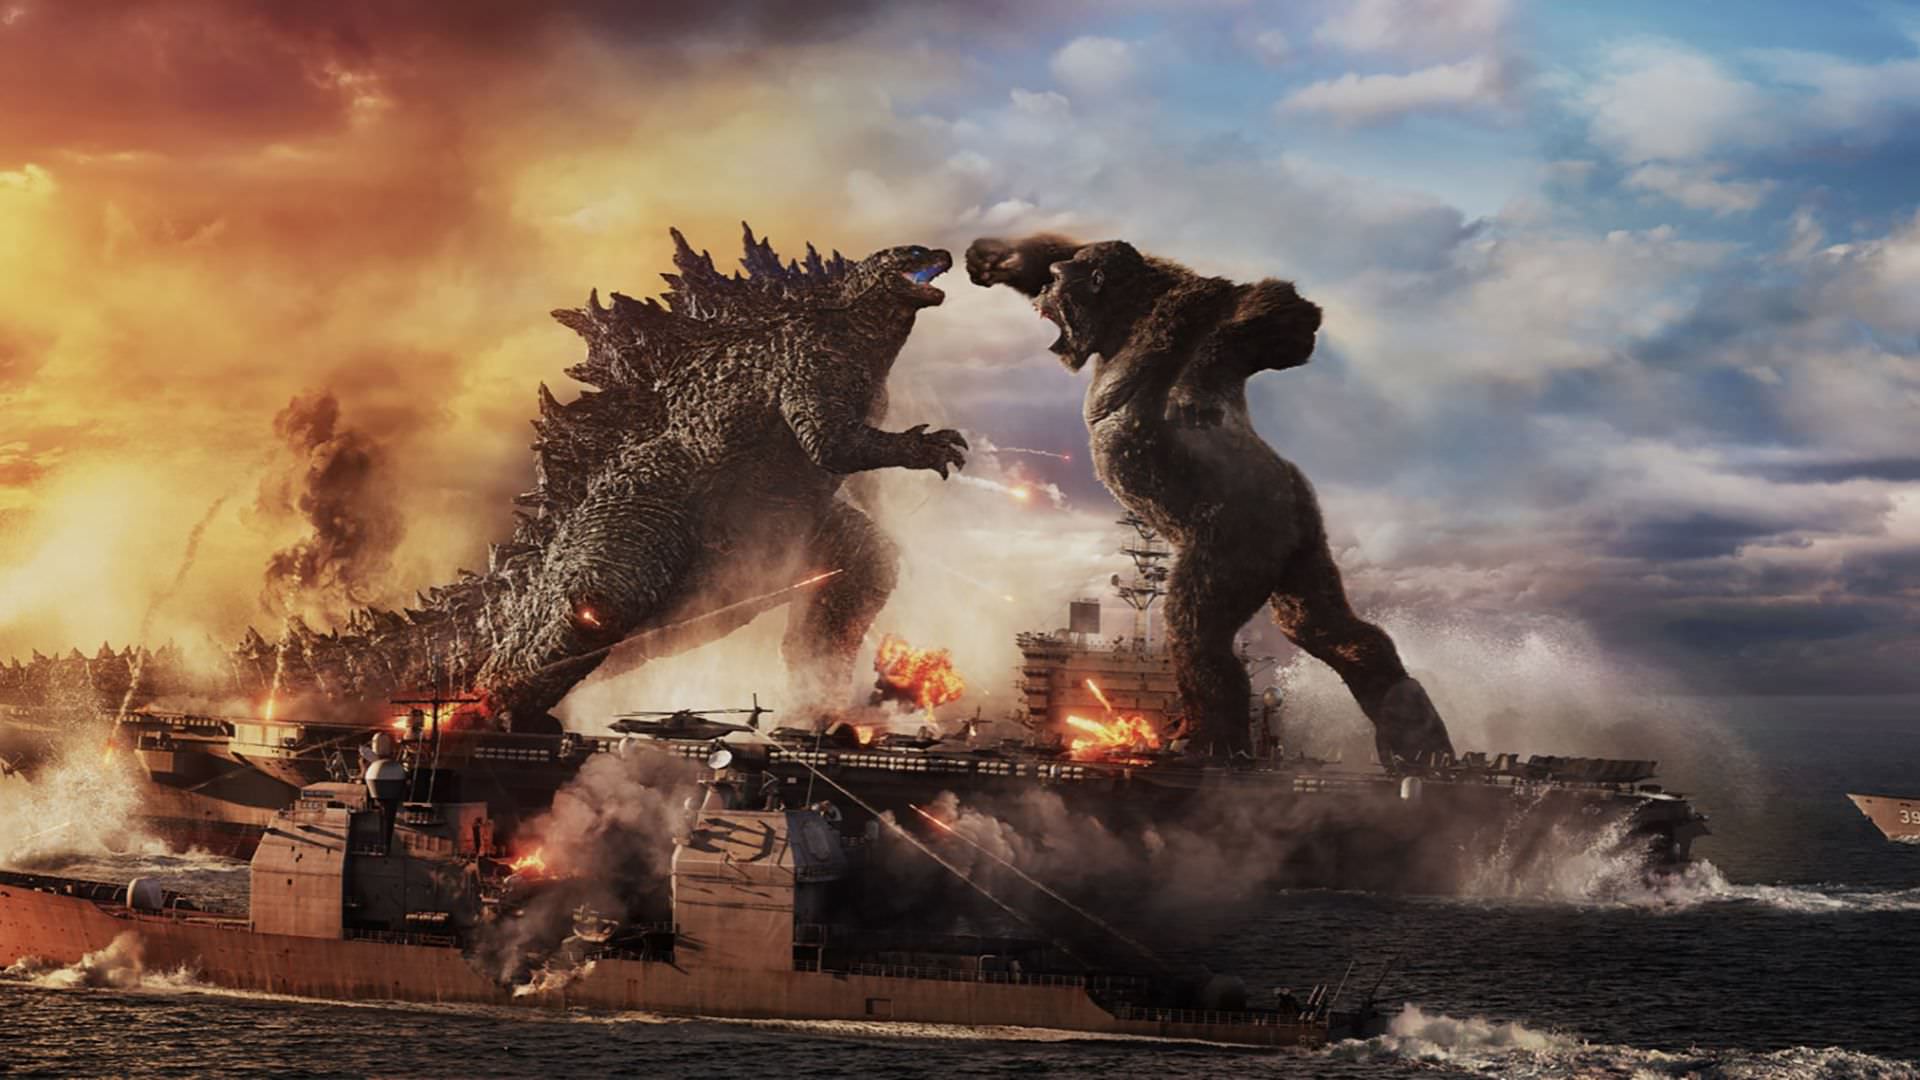 مبارزه گودزیلا با کینگ کونگ روی ناو هواپیمابر در فیلم Godzilla vs Kong